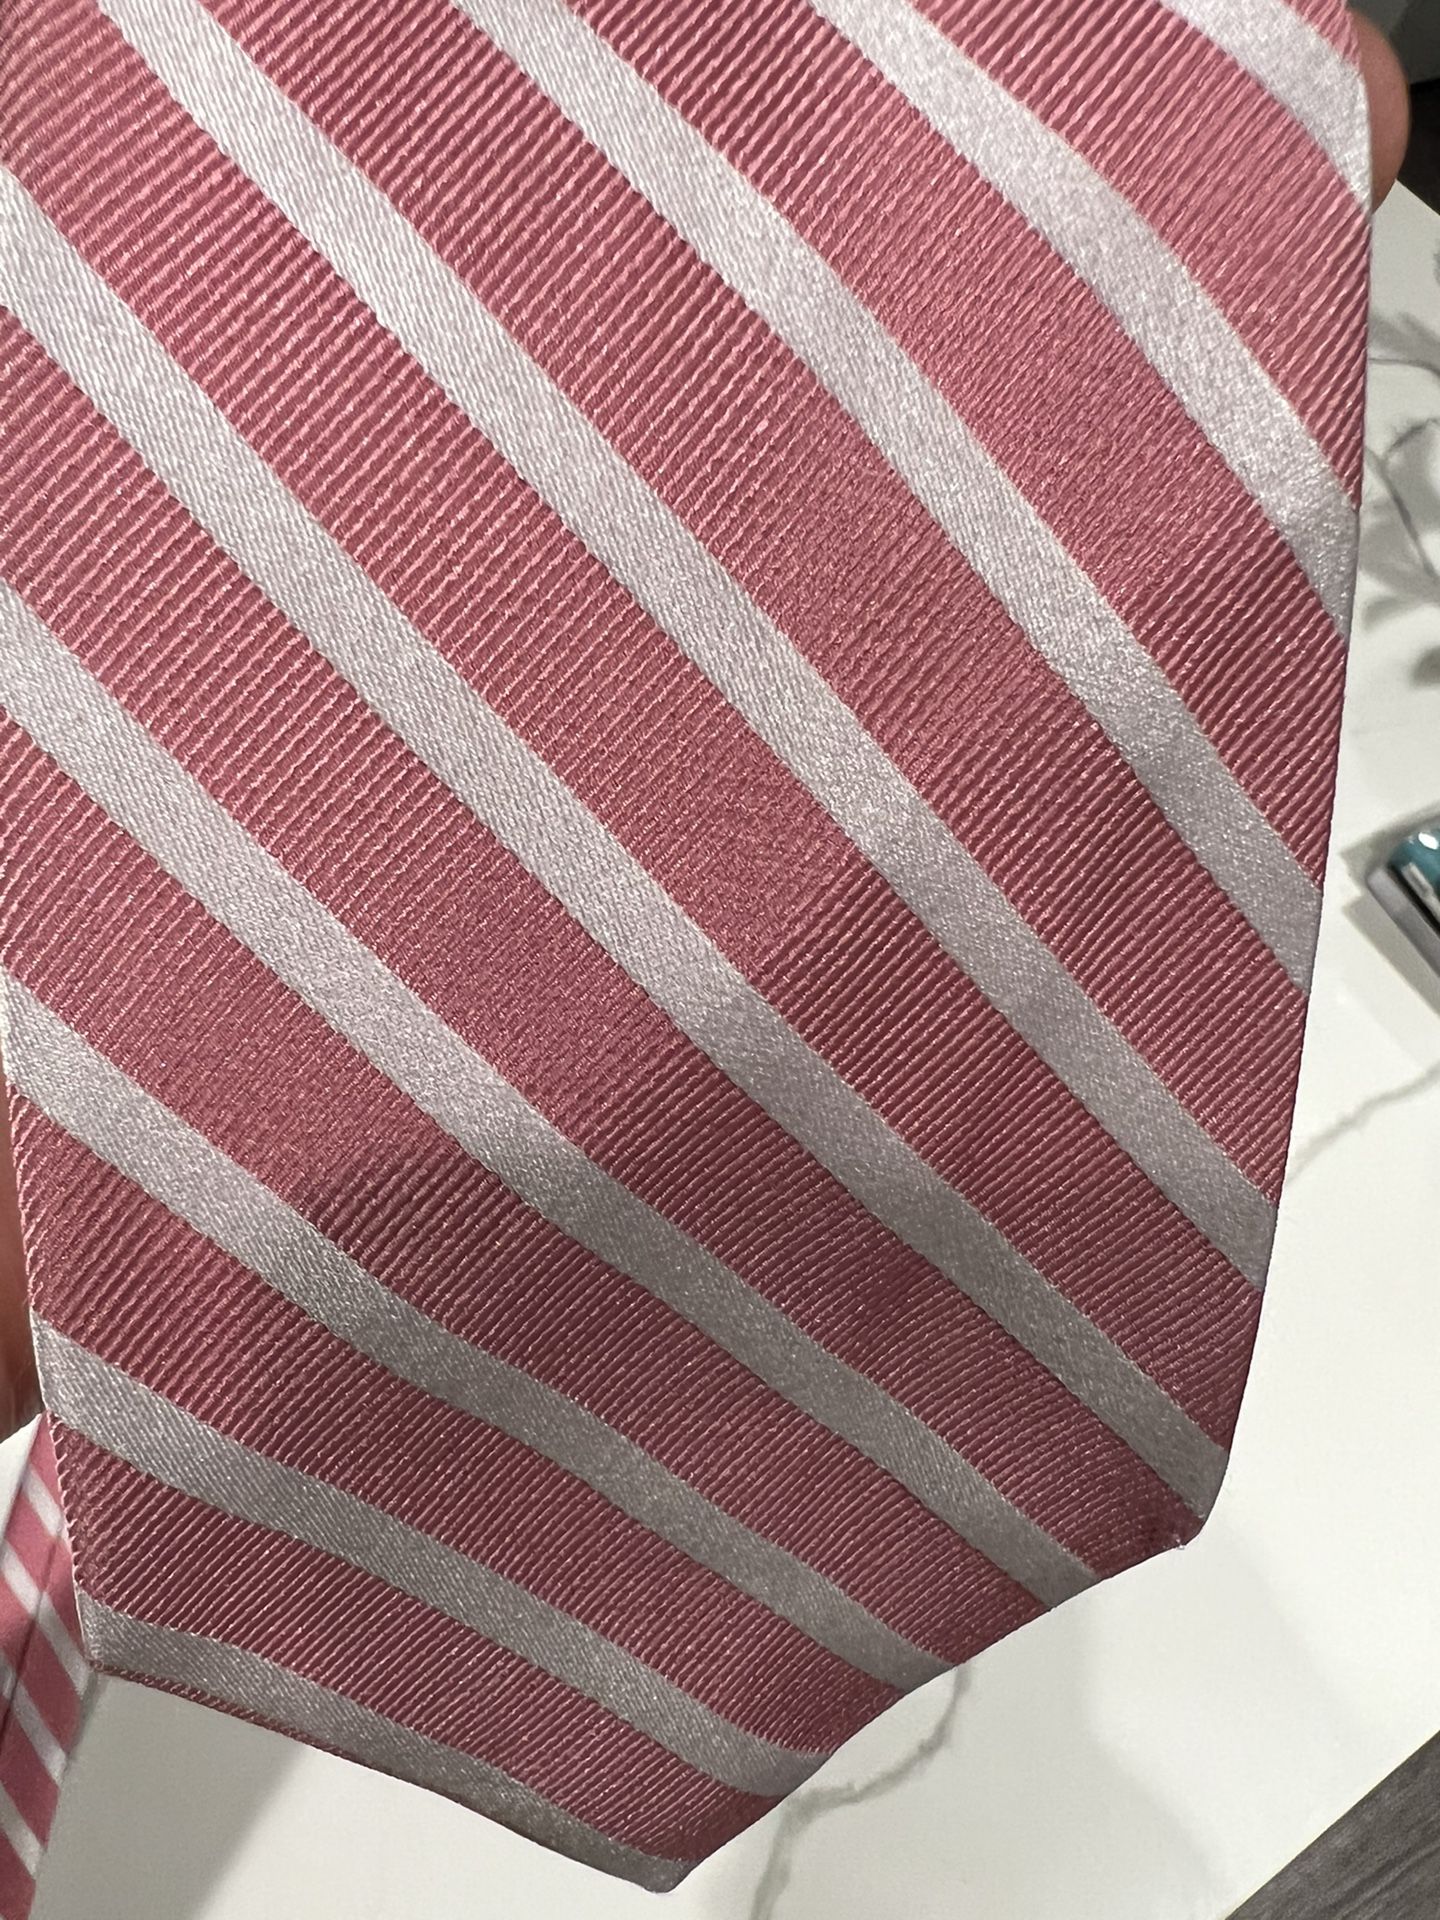  Izod Pink Tie